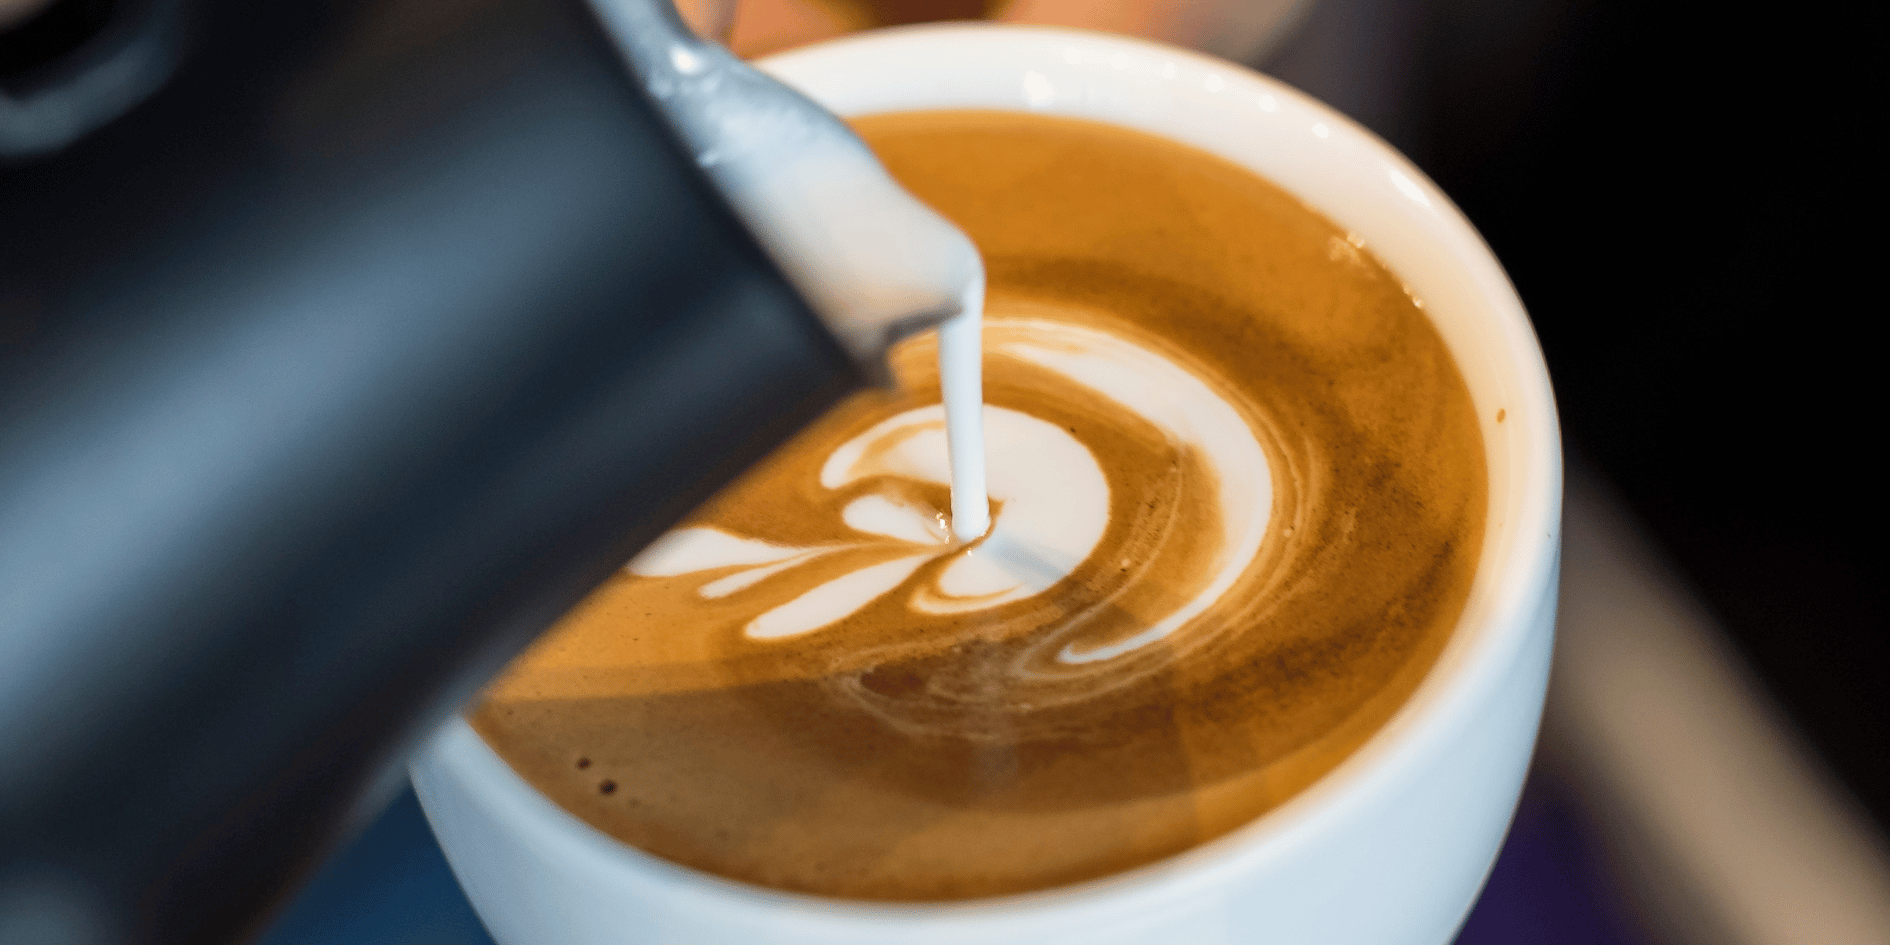 Cortado vs Latte vs Flat White: In-Depth Coffee Comparison